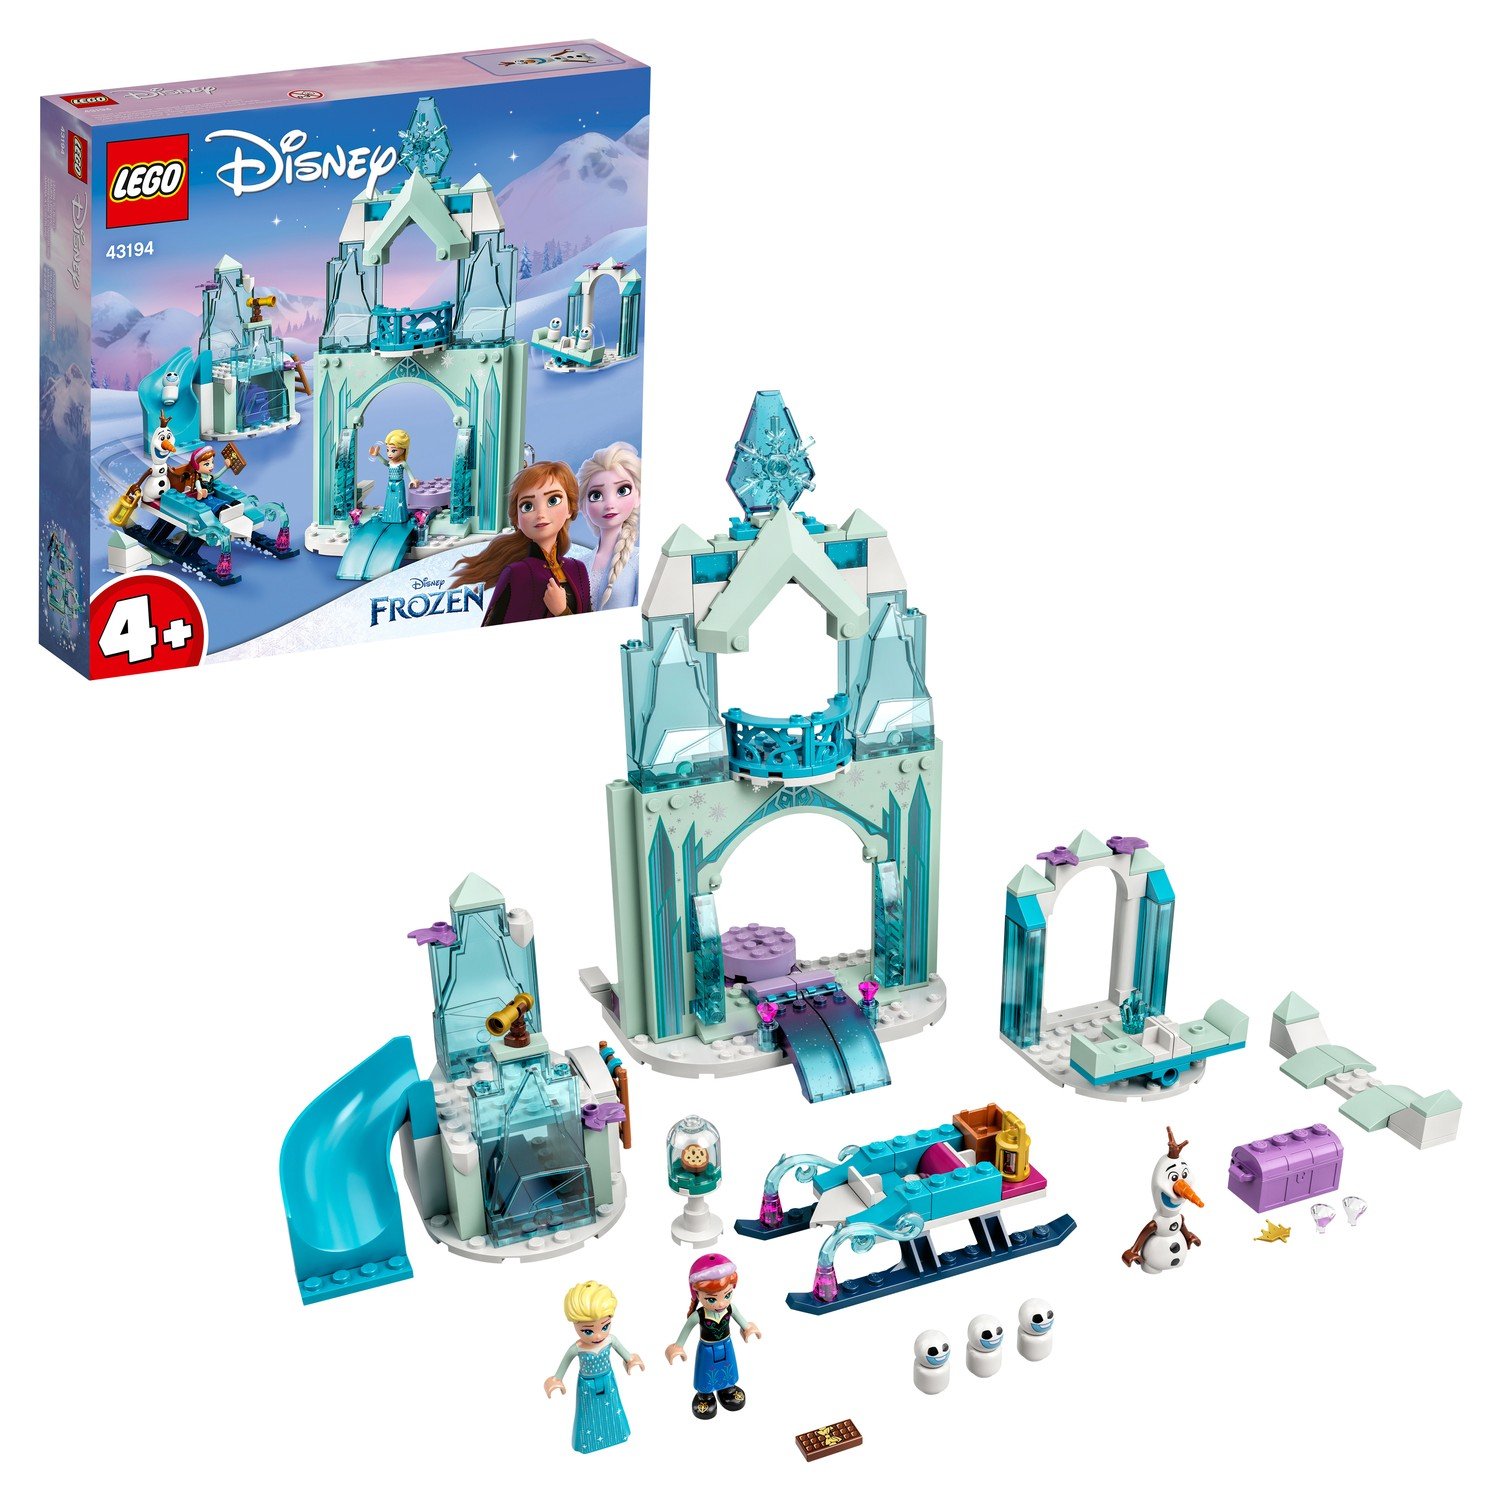 Конструктор LEGO Disney Frozen Зимняя сказка Анны и Эльзы, 154 детали, 43194 конструктор lego disney princess веселье в замке анны и олафа 43204